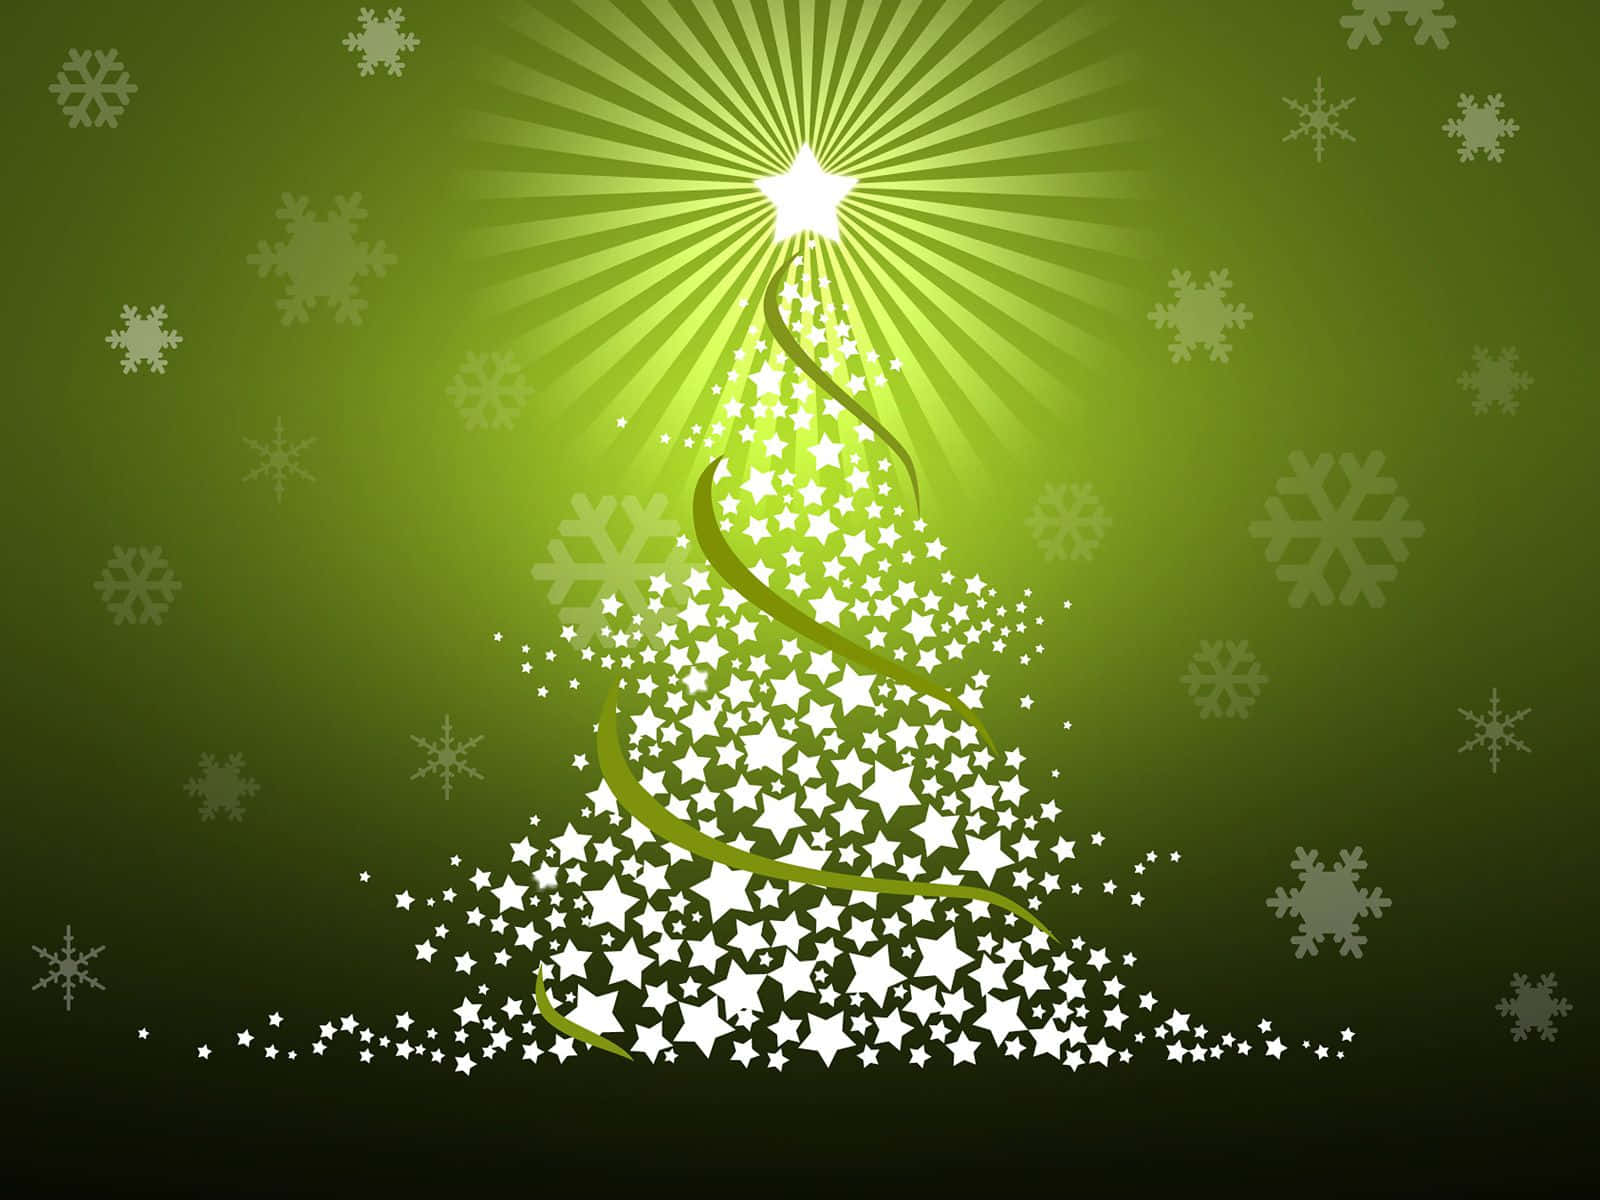 Árvorede Natal Com Flocos De Neve Em Um Fundo Verde. Papel de Parede